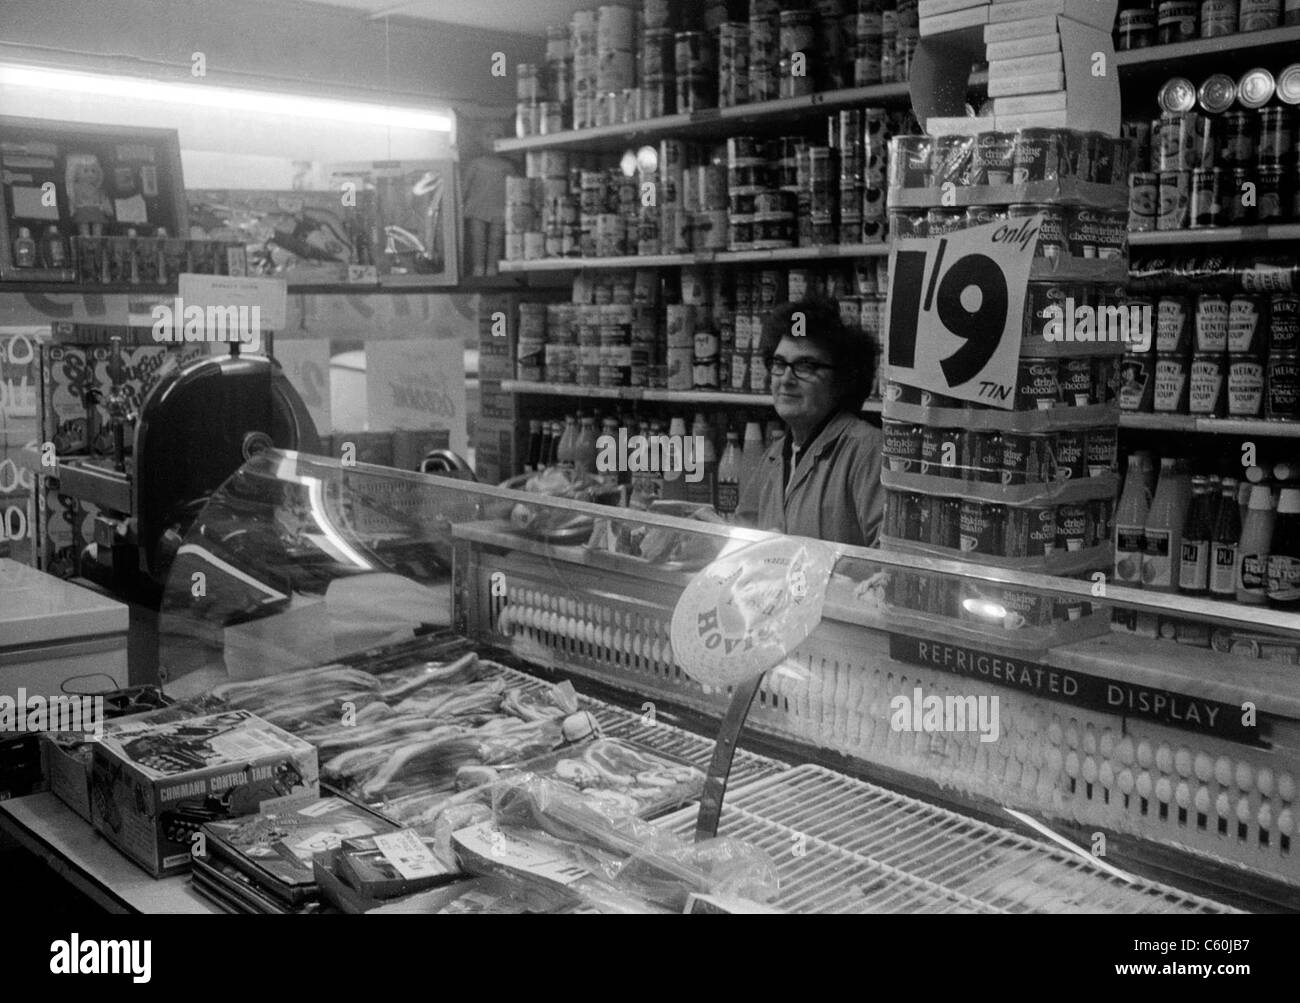 Negoziante nel suo negozio di alimentari Harold Park, Essex, Inghilterra, ottobre 1969 mostra prezzo di 1/9 pre sterlina decimale Foto Stock